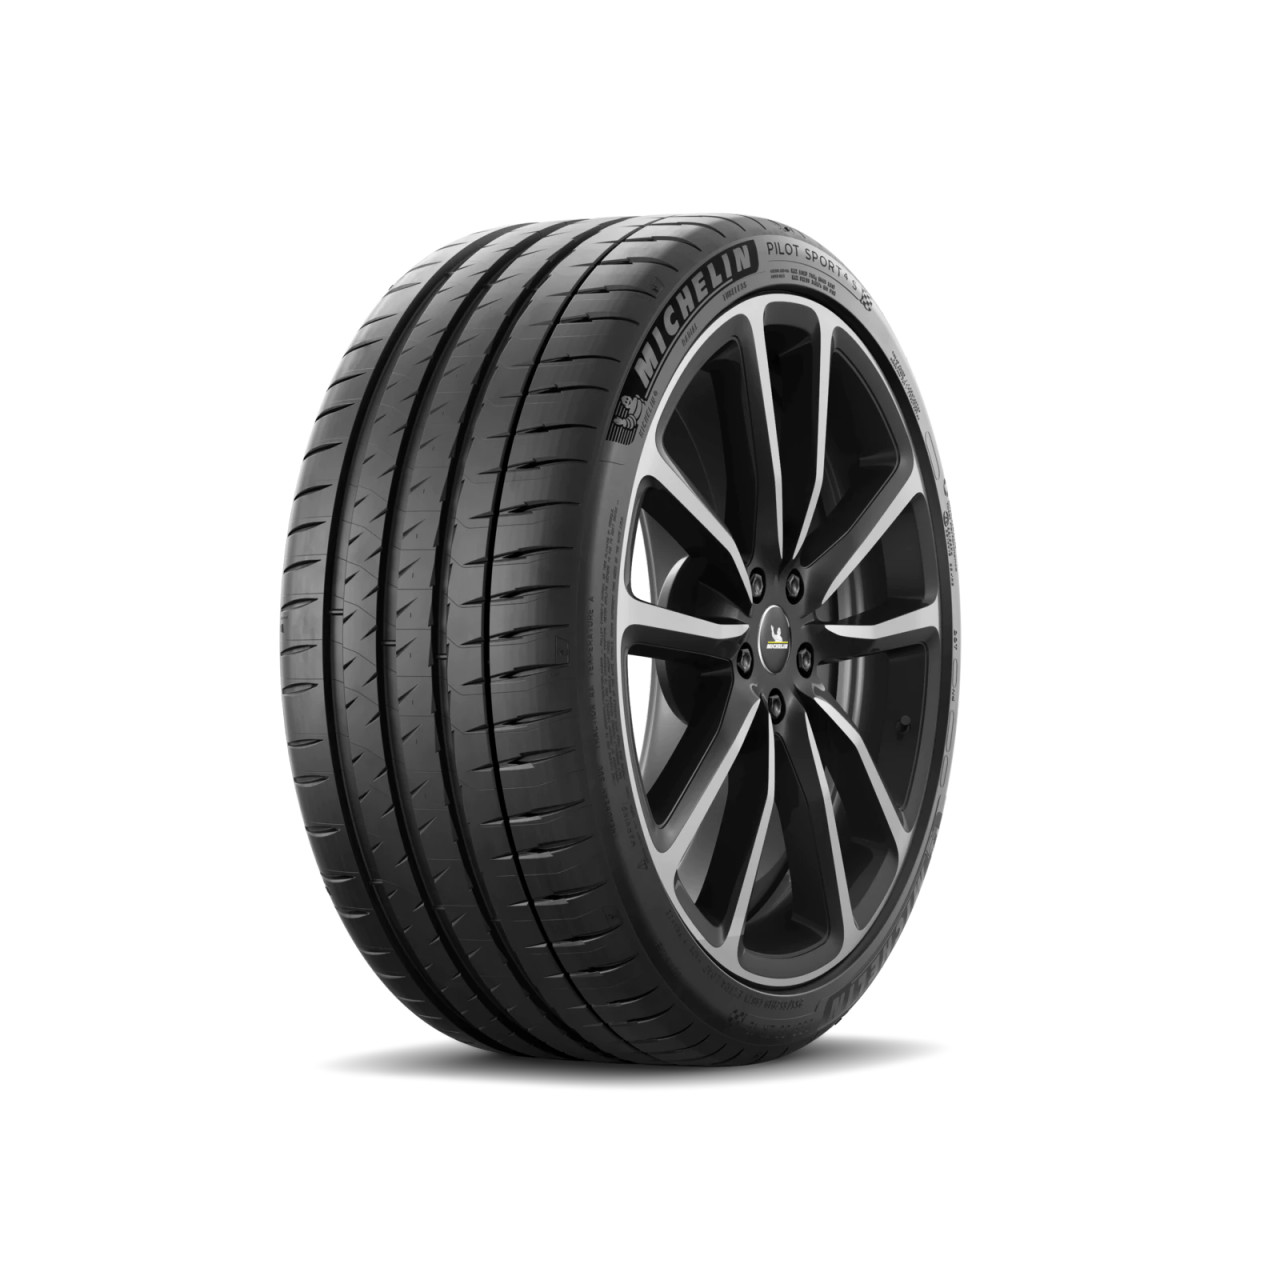 Michelin Pilot Sport 4S 245/45R19 102Y XL Star BMW Tire